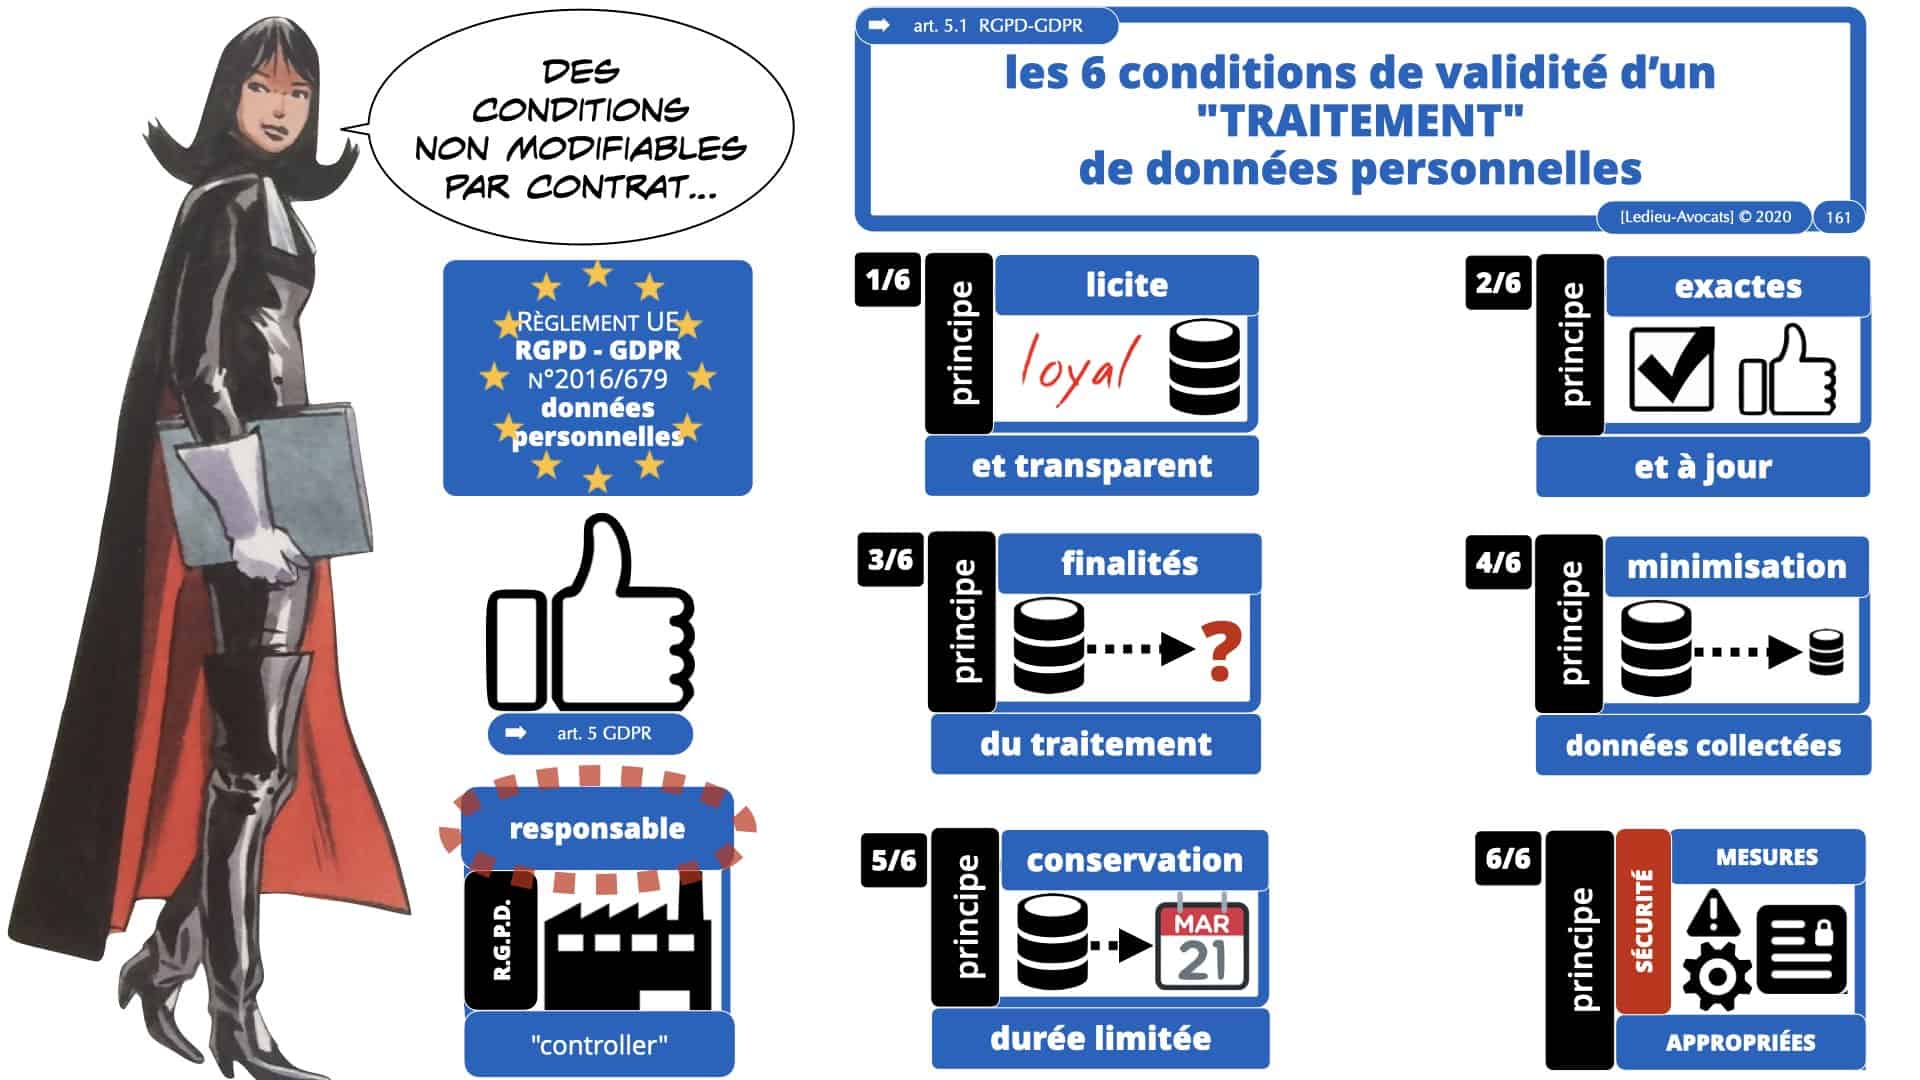 RGPD e-Privacy données personnelles jurisprudence formation Lamy Les Echos 10-02-2021 ©Ledieu-Avocats.161